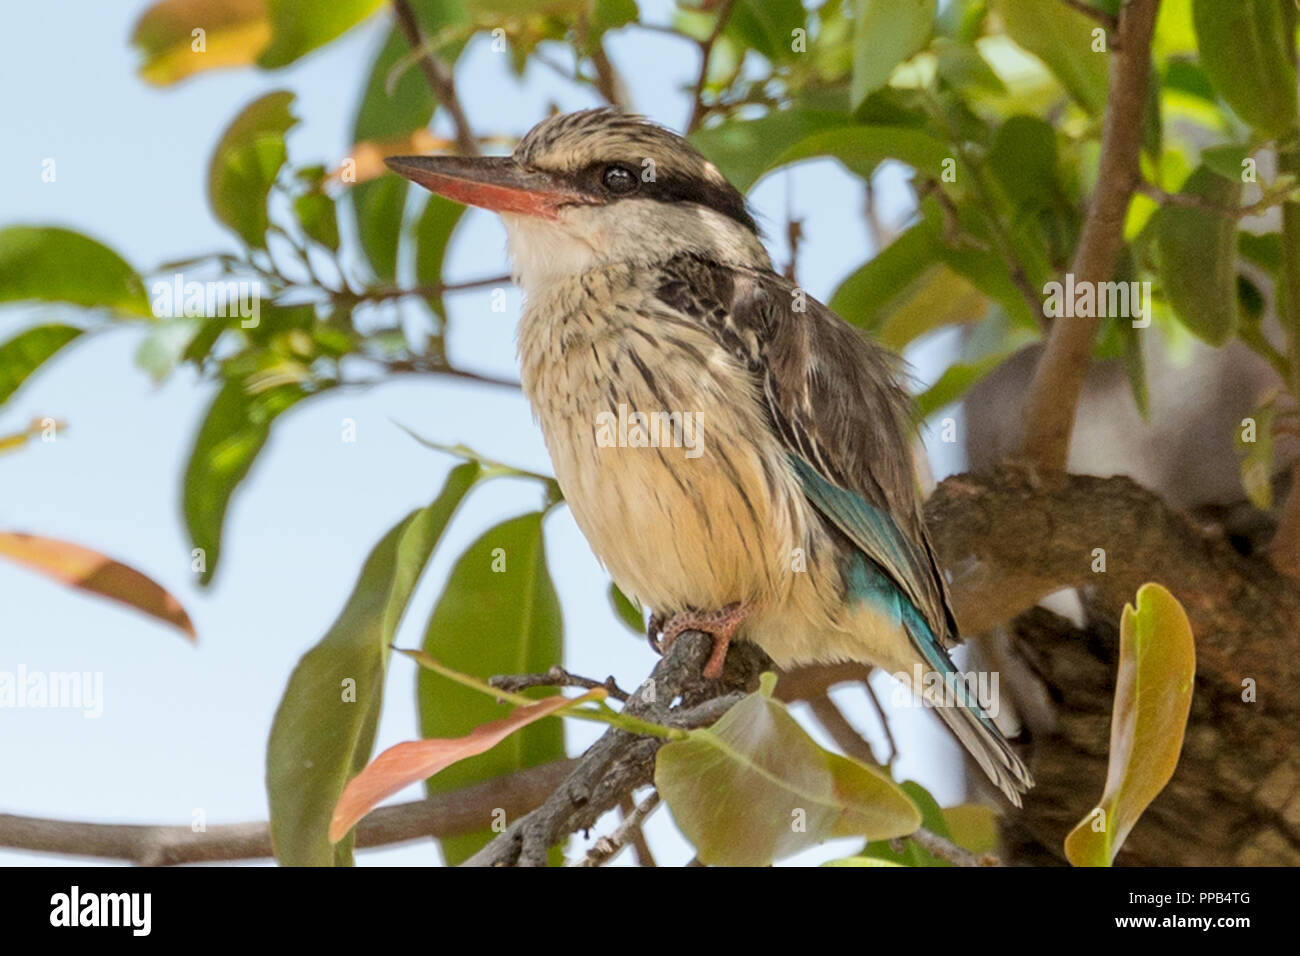 Gestreifte Kingfisher (Halcyon chelicuti) ist eine Pflanzenart aus der Unterfamilie der Baum Kingfisher, Tis Aby, Äthiopien Stockfoto